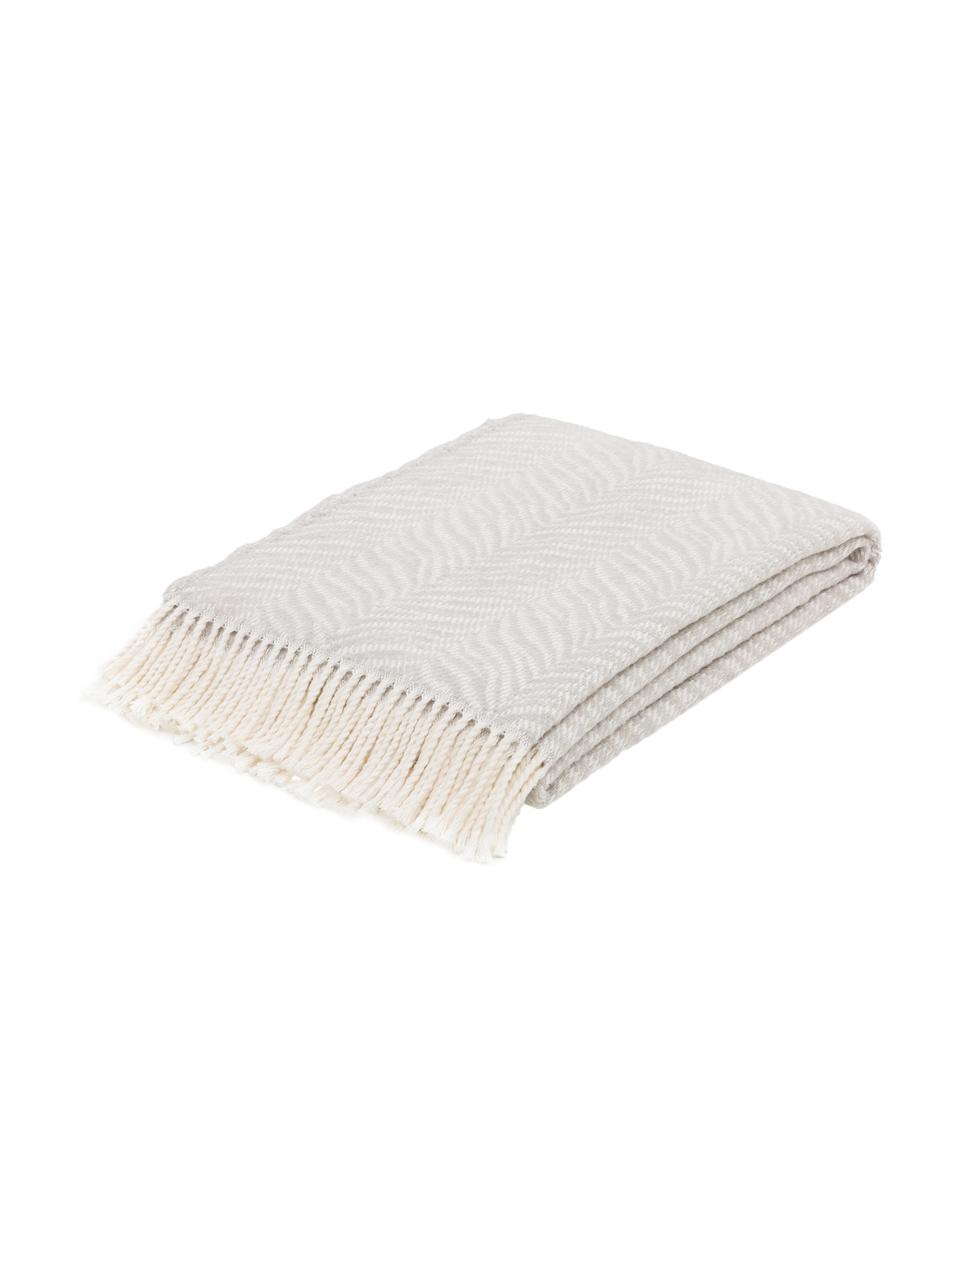 Manta Tigre, 50% algodón, 50% acrílico, Gris claro, blanco crudo, An 140 x L 180 cm